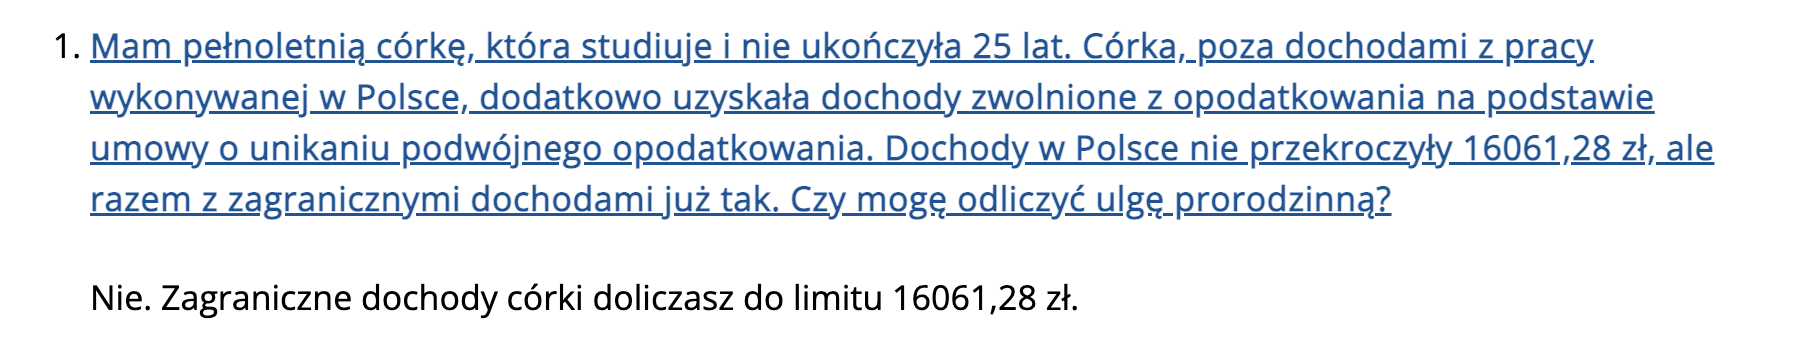 Źródło: podatki.gov.pl.